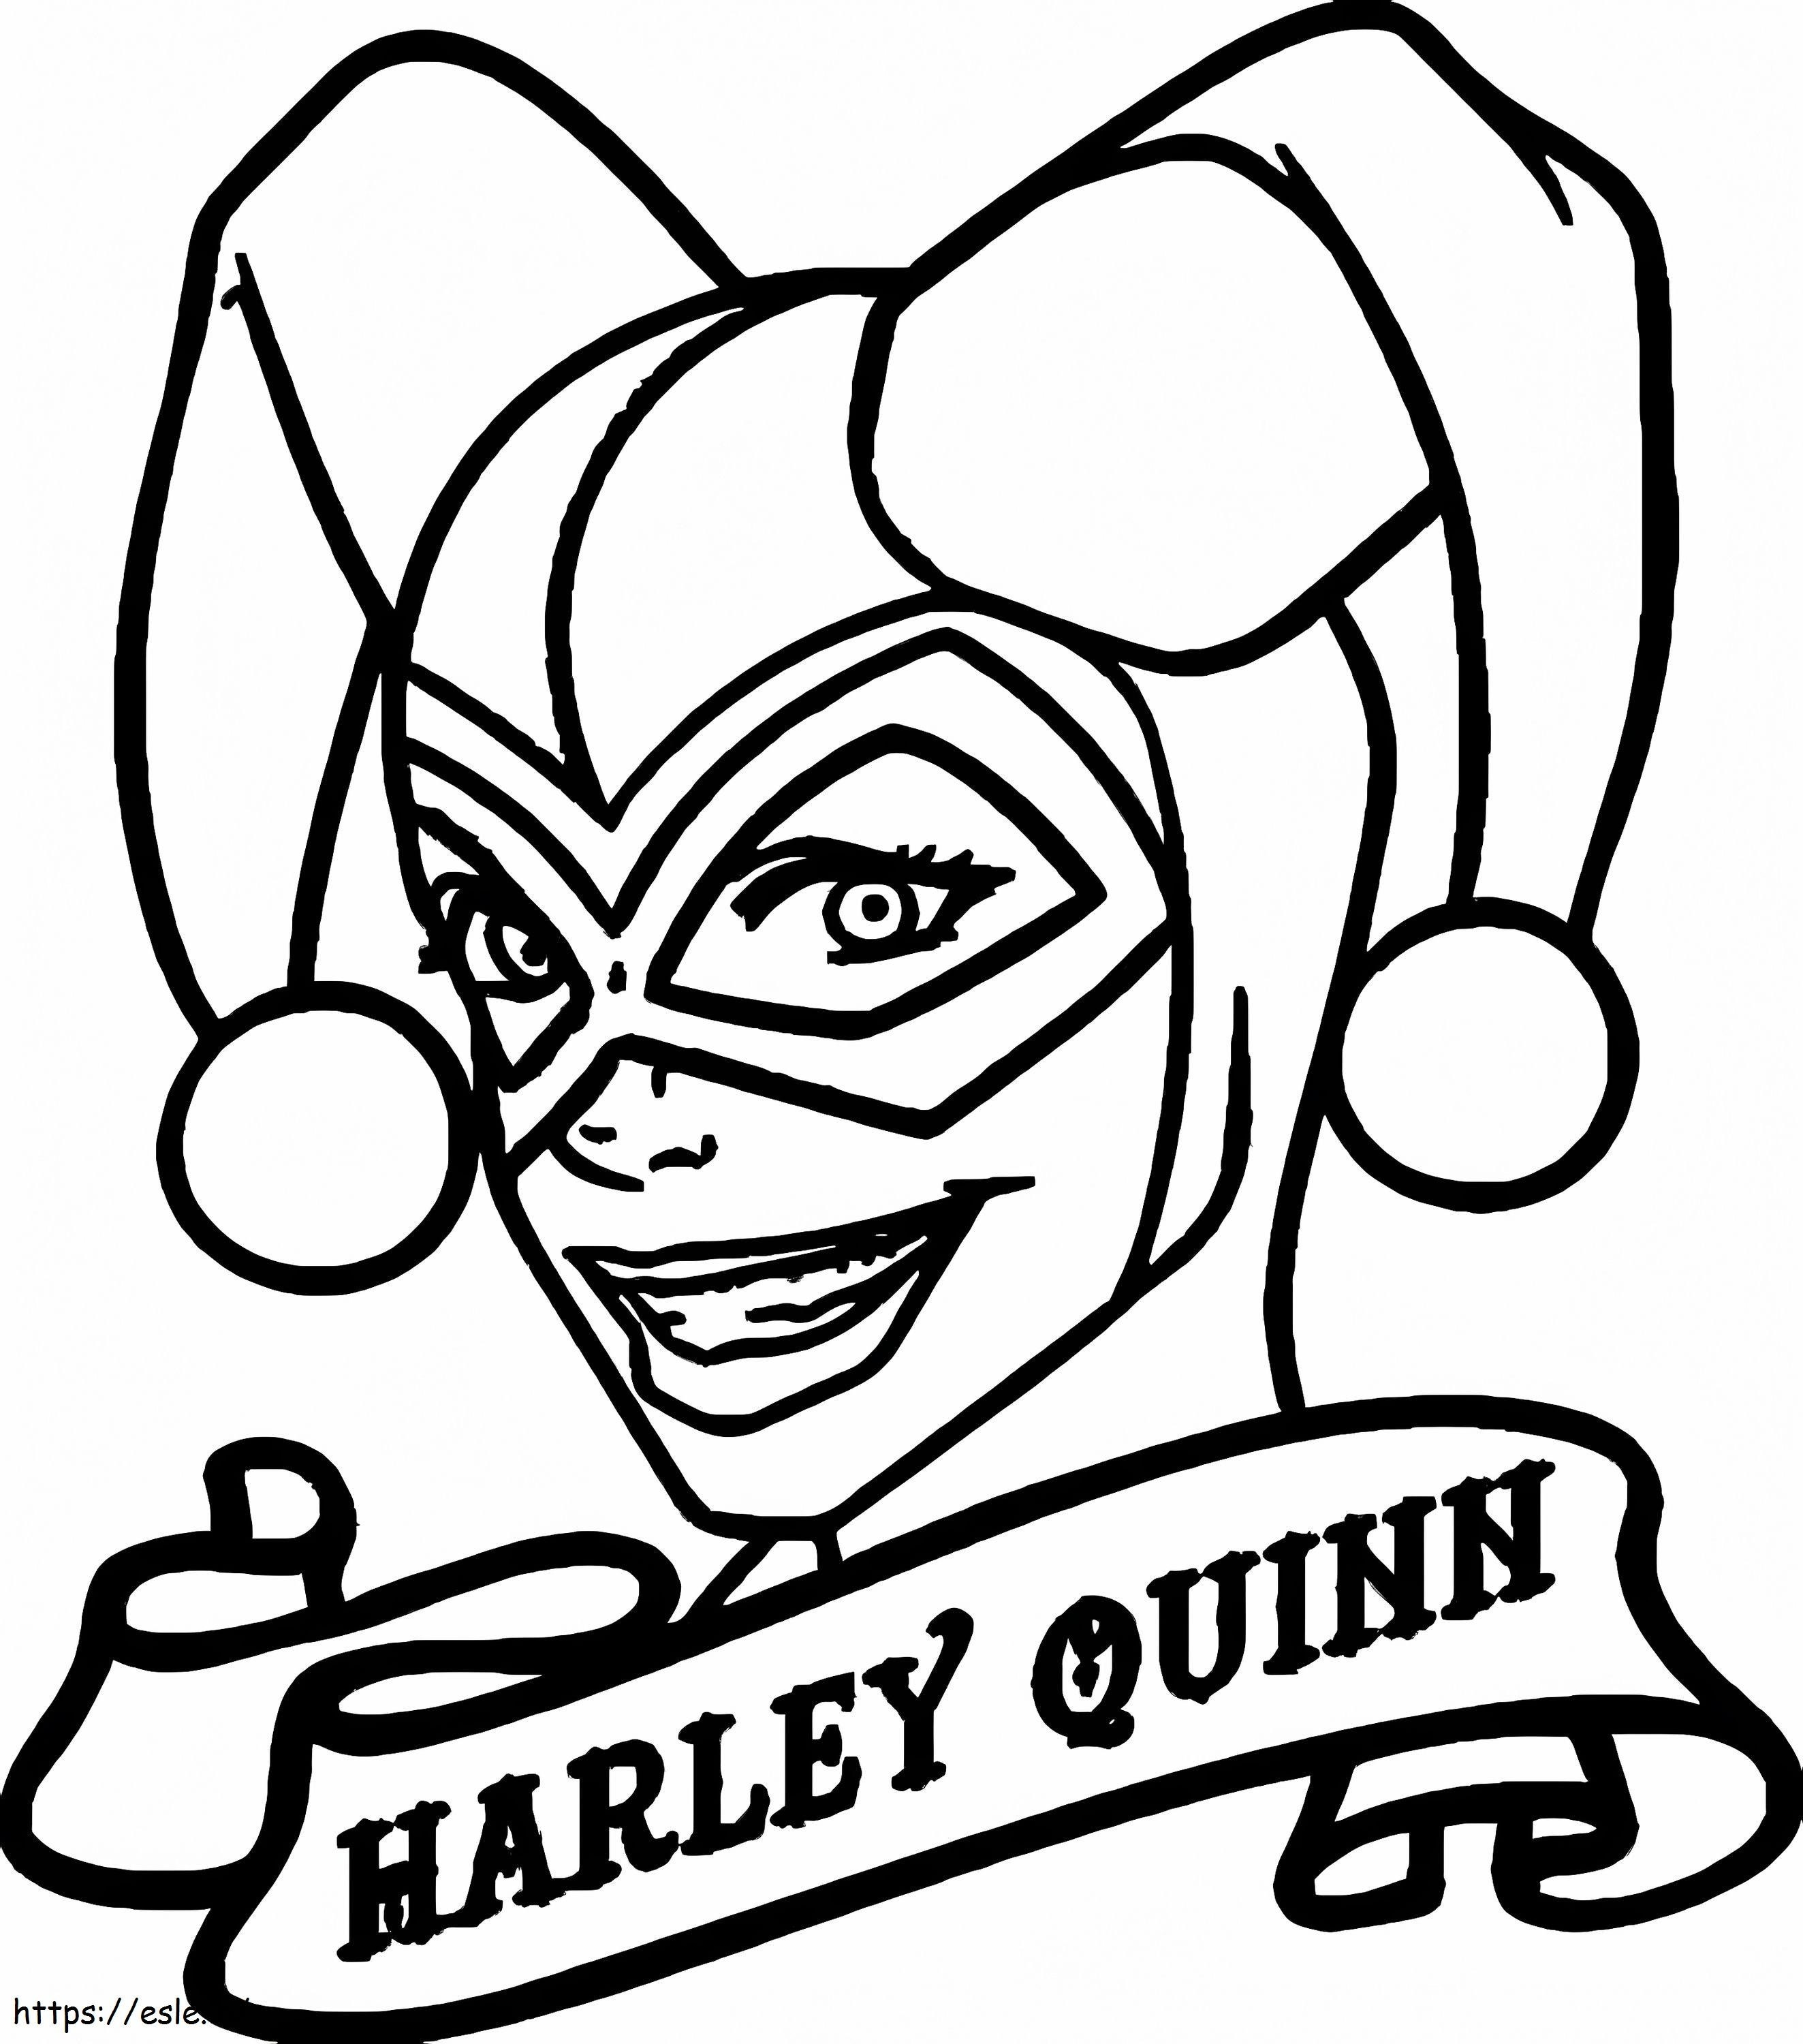 Harley Quinn'in Kafasını Çiz boyama